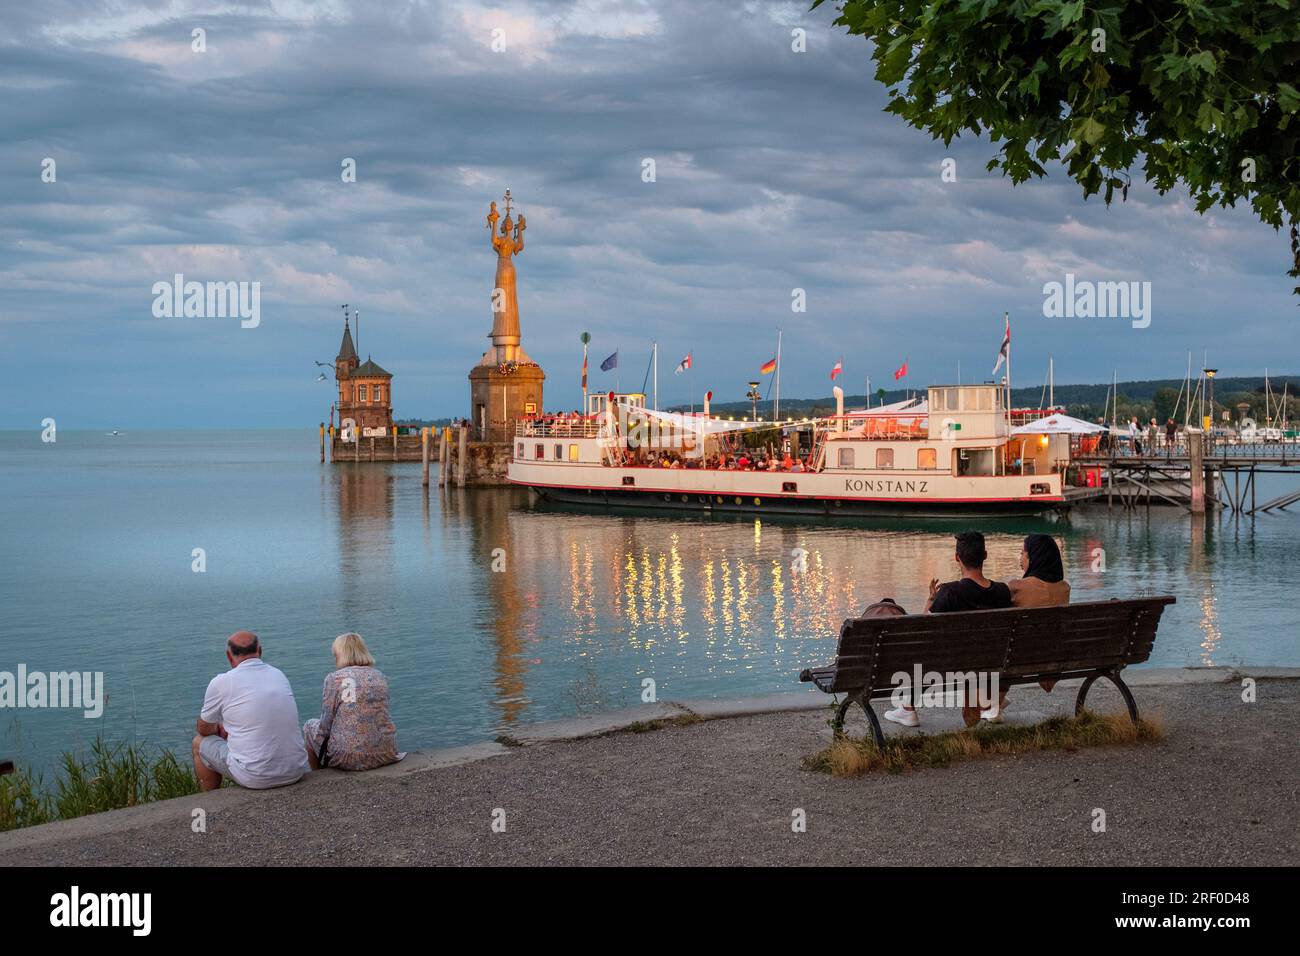 Gente che si rilassa sulle rive del lago di Costanza, godendo la vista sul porto, la Statua di Imperia in vista, Costanza, Baden-Wurttemberg, Germania Foto Stock